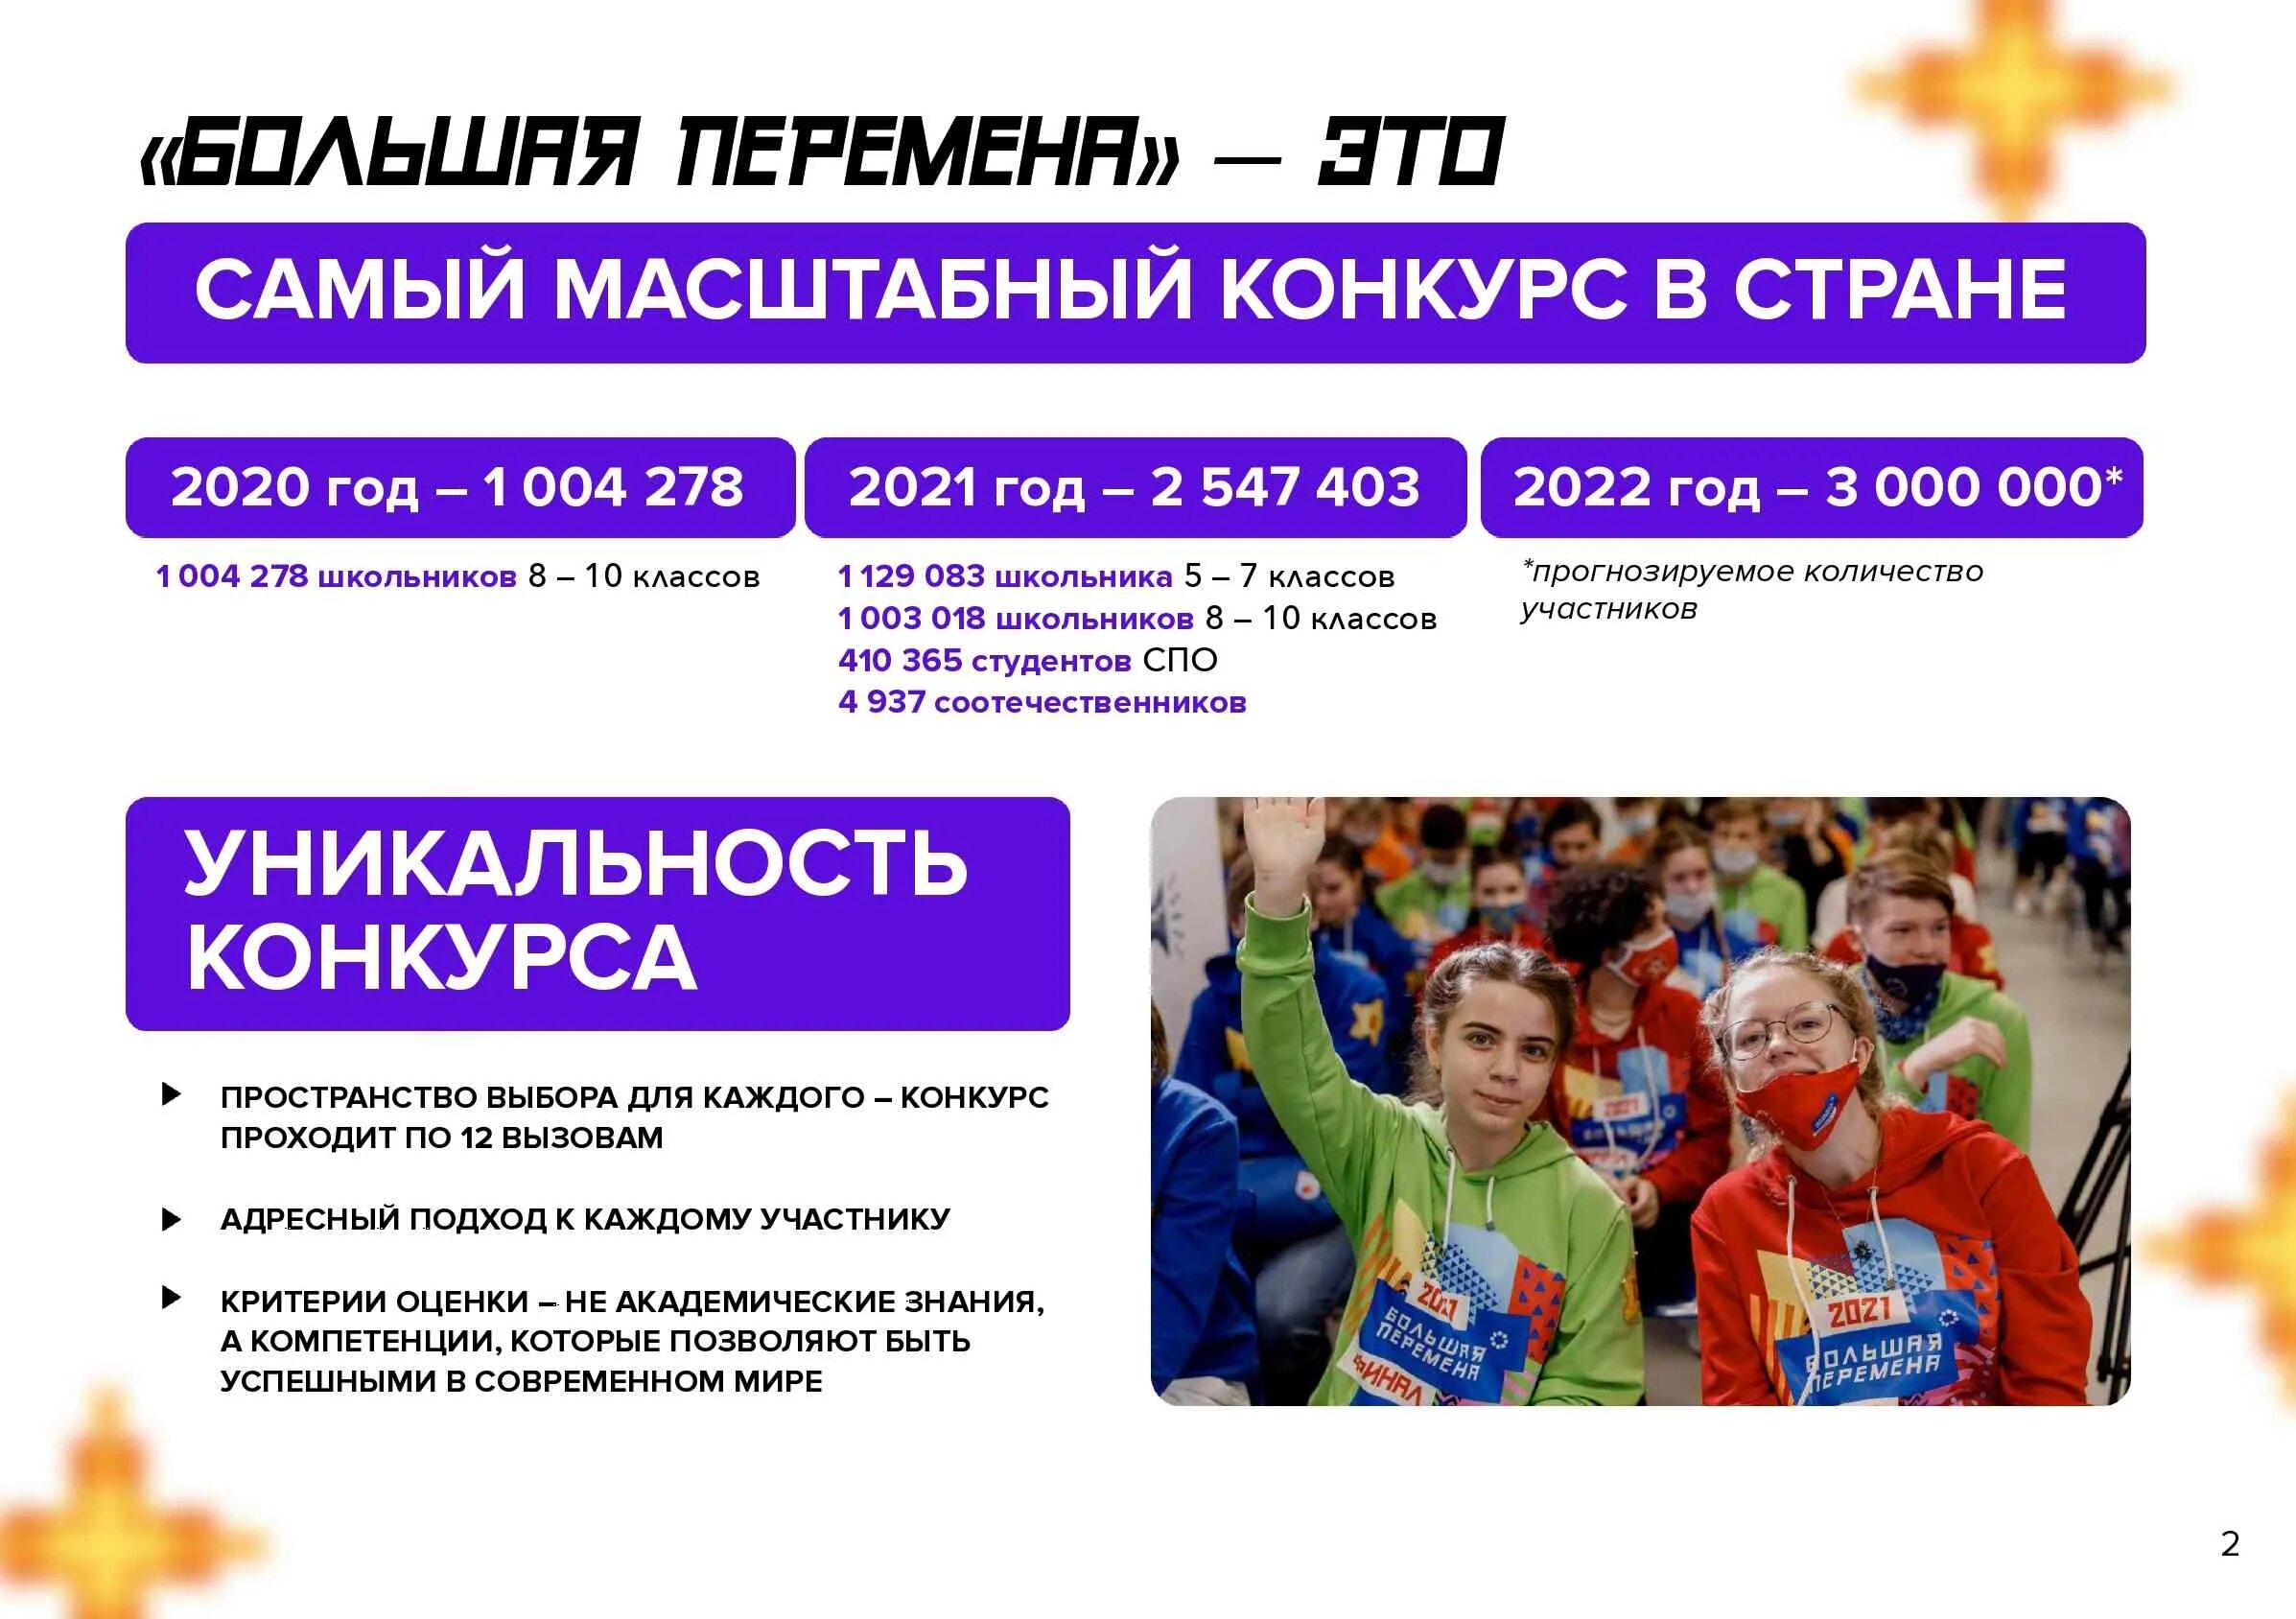 Участники конкурса большая перемена. Всероссийский конкурс большая перемена 2022. Большая перемена конкурс для школьников 2022. Проект большая перемена 2022. Проект большая перемена для школьников что это такое.